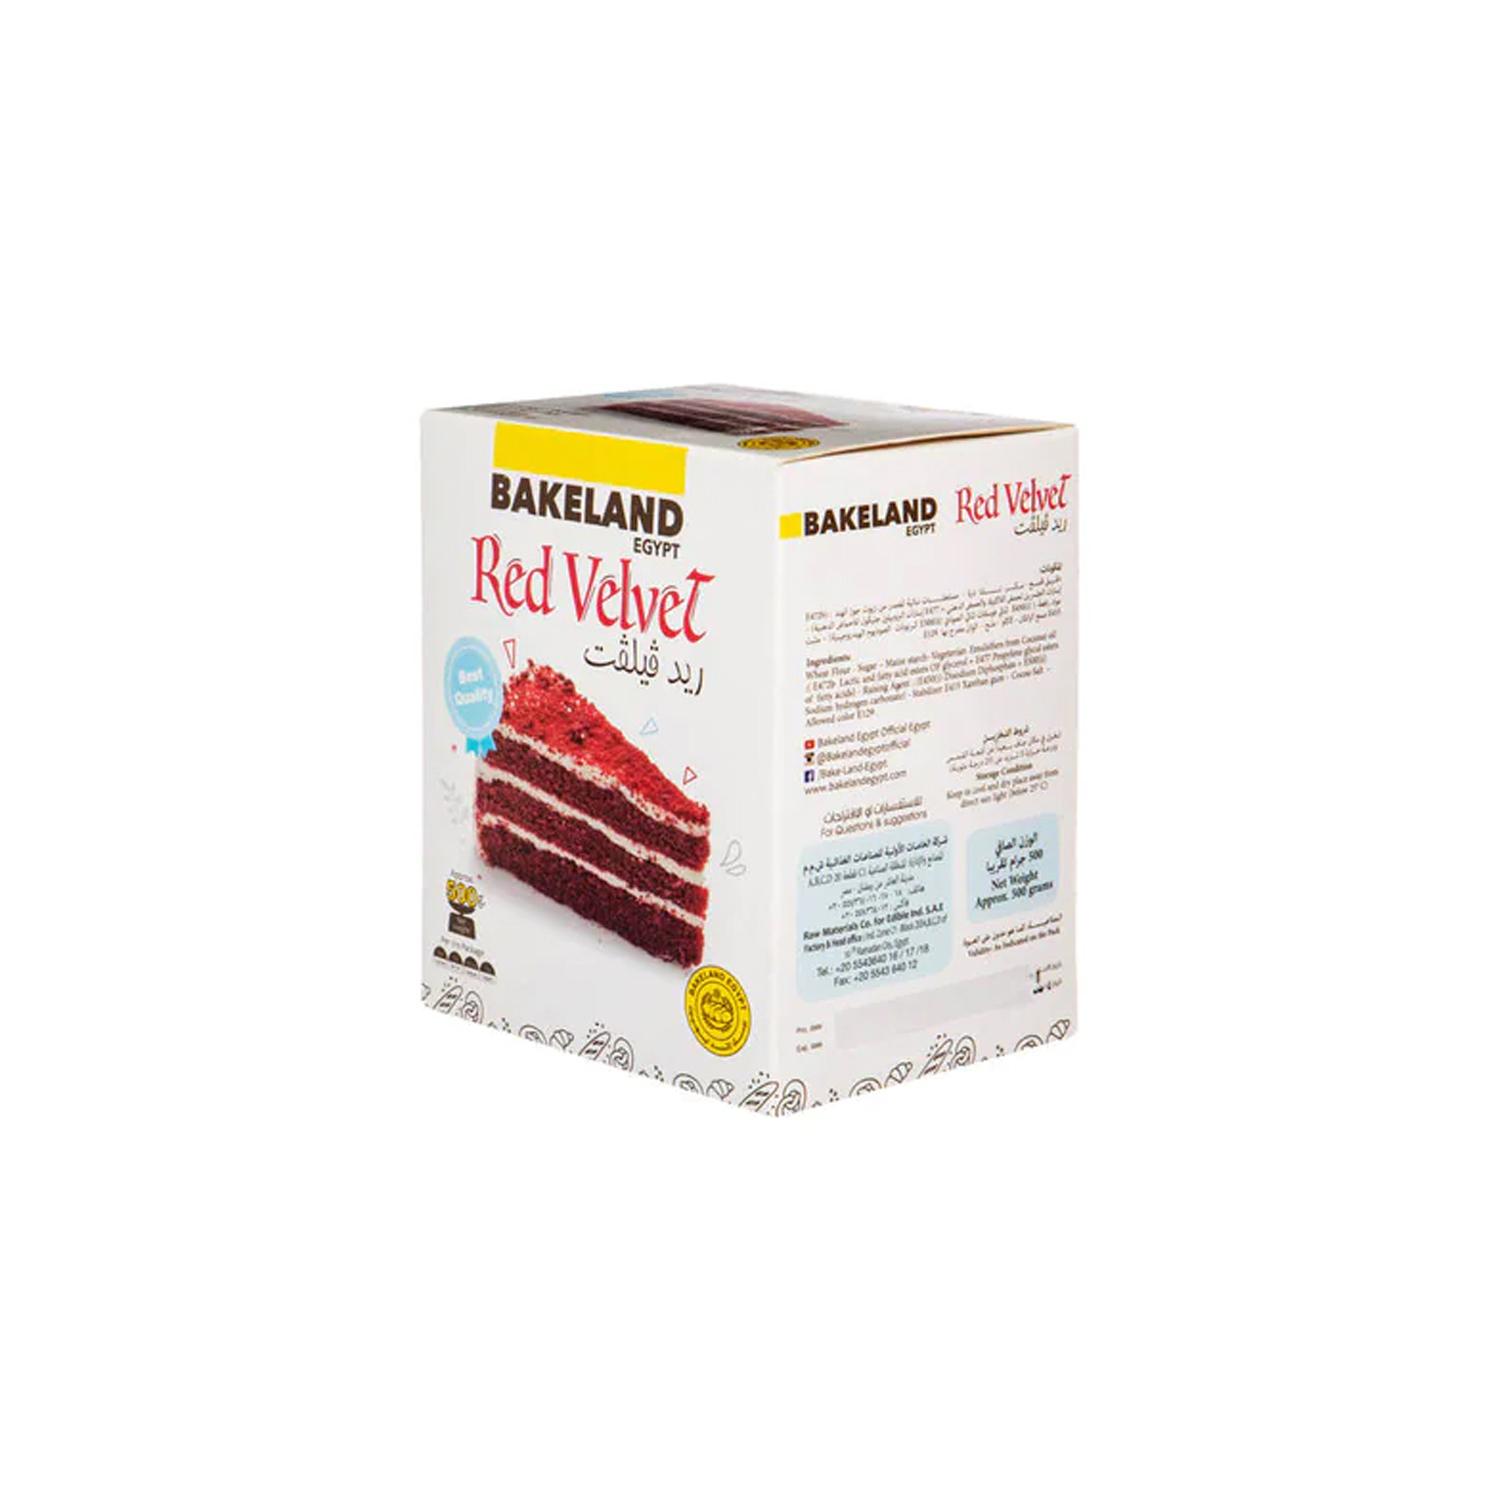 BAKELAND RED VELVET CAKE MIX 500GMS